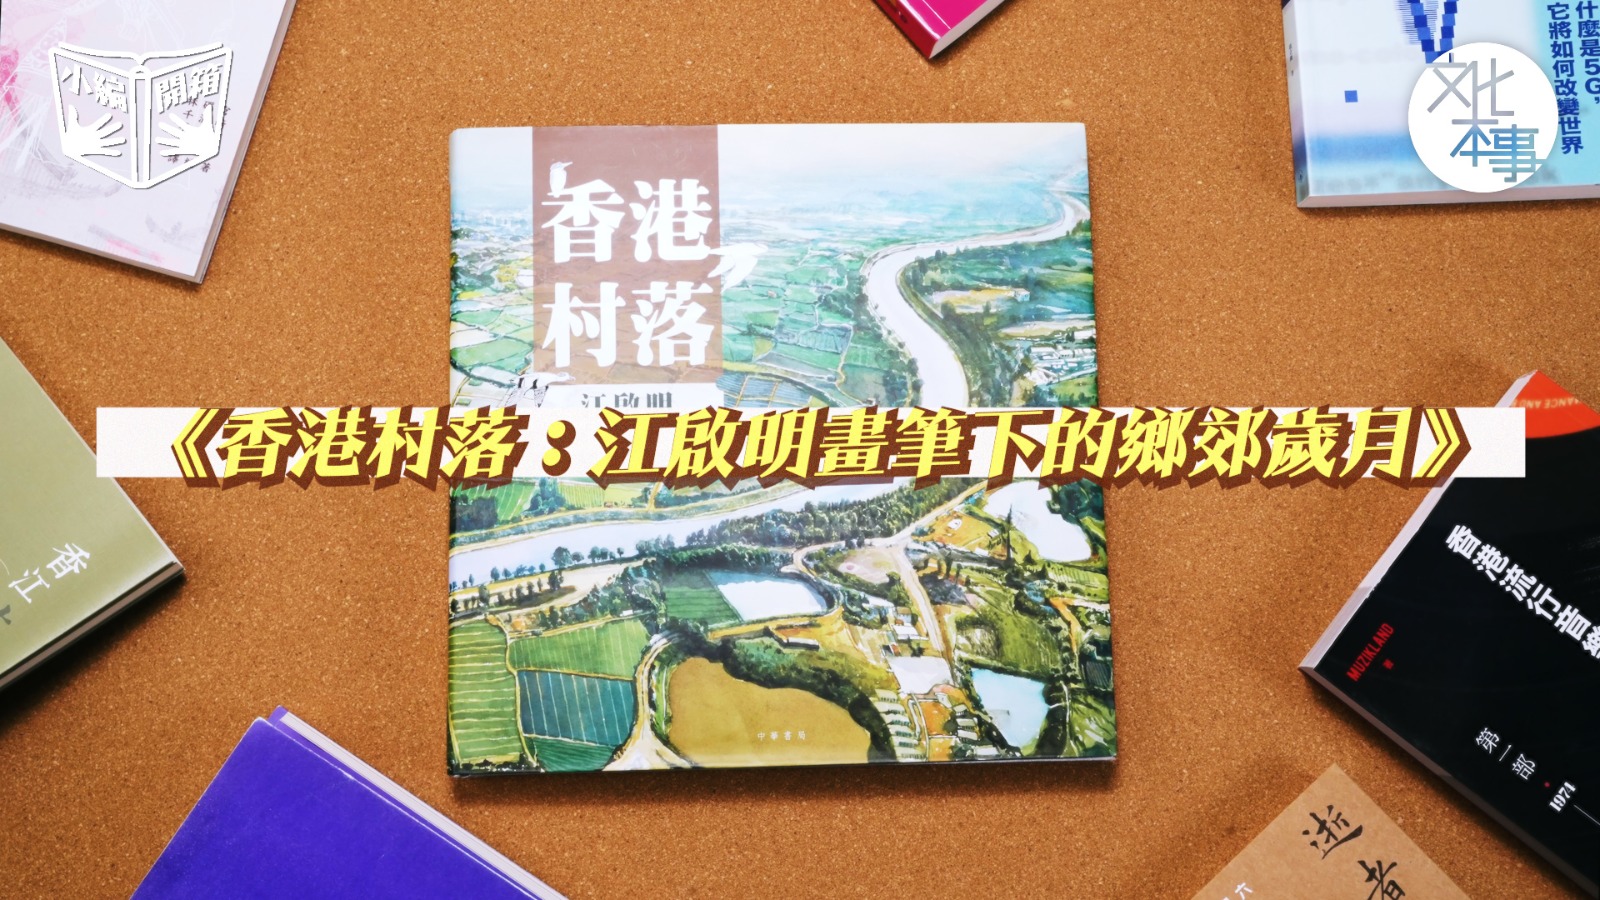 【小編開箱】江啟明畫筆下的鄉郊歲月-躍然紙上的香港村落